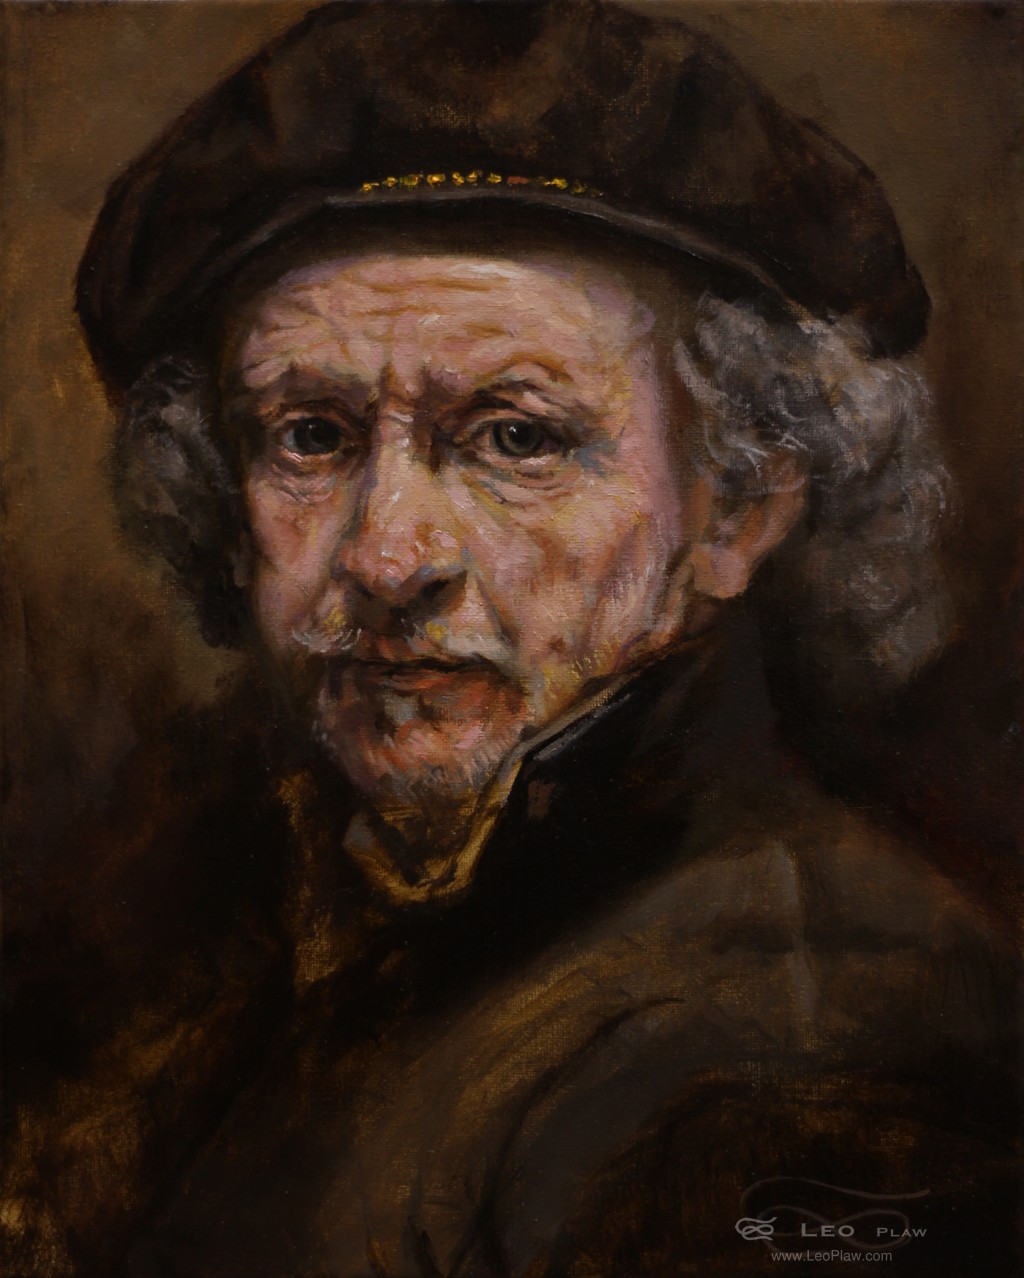 Rembrandt (portrait study), Leo Plaw, 24 x 30cm, oil on canvas